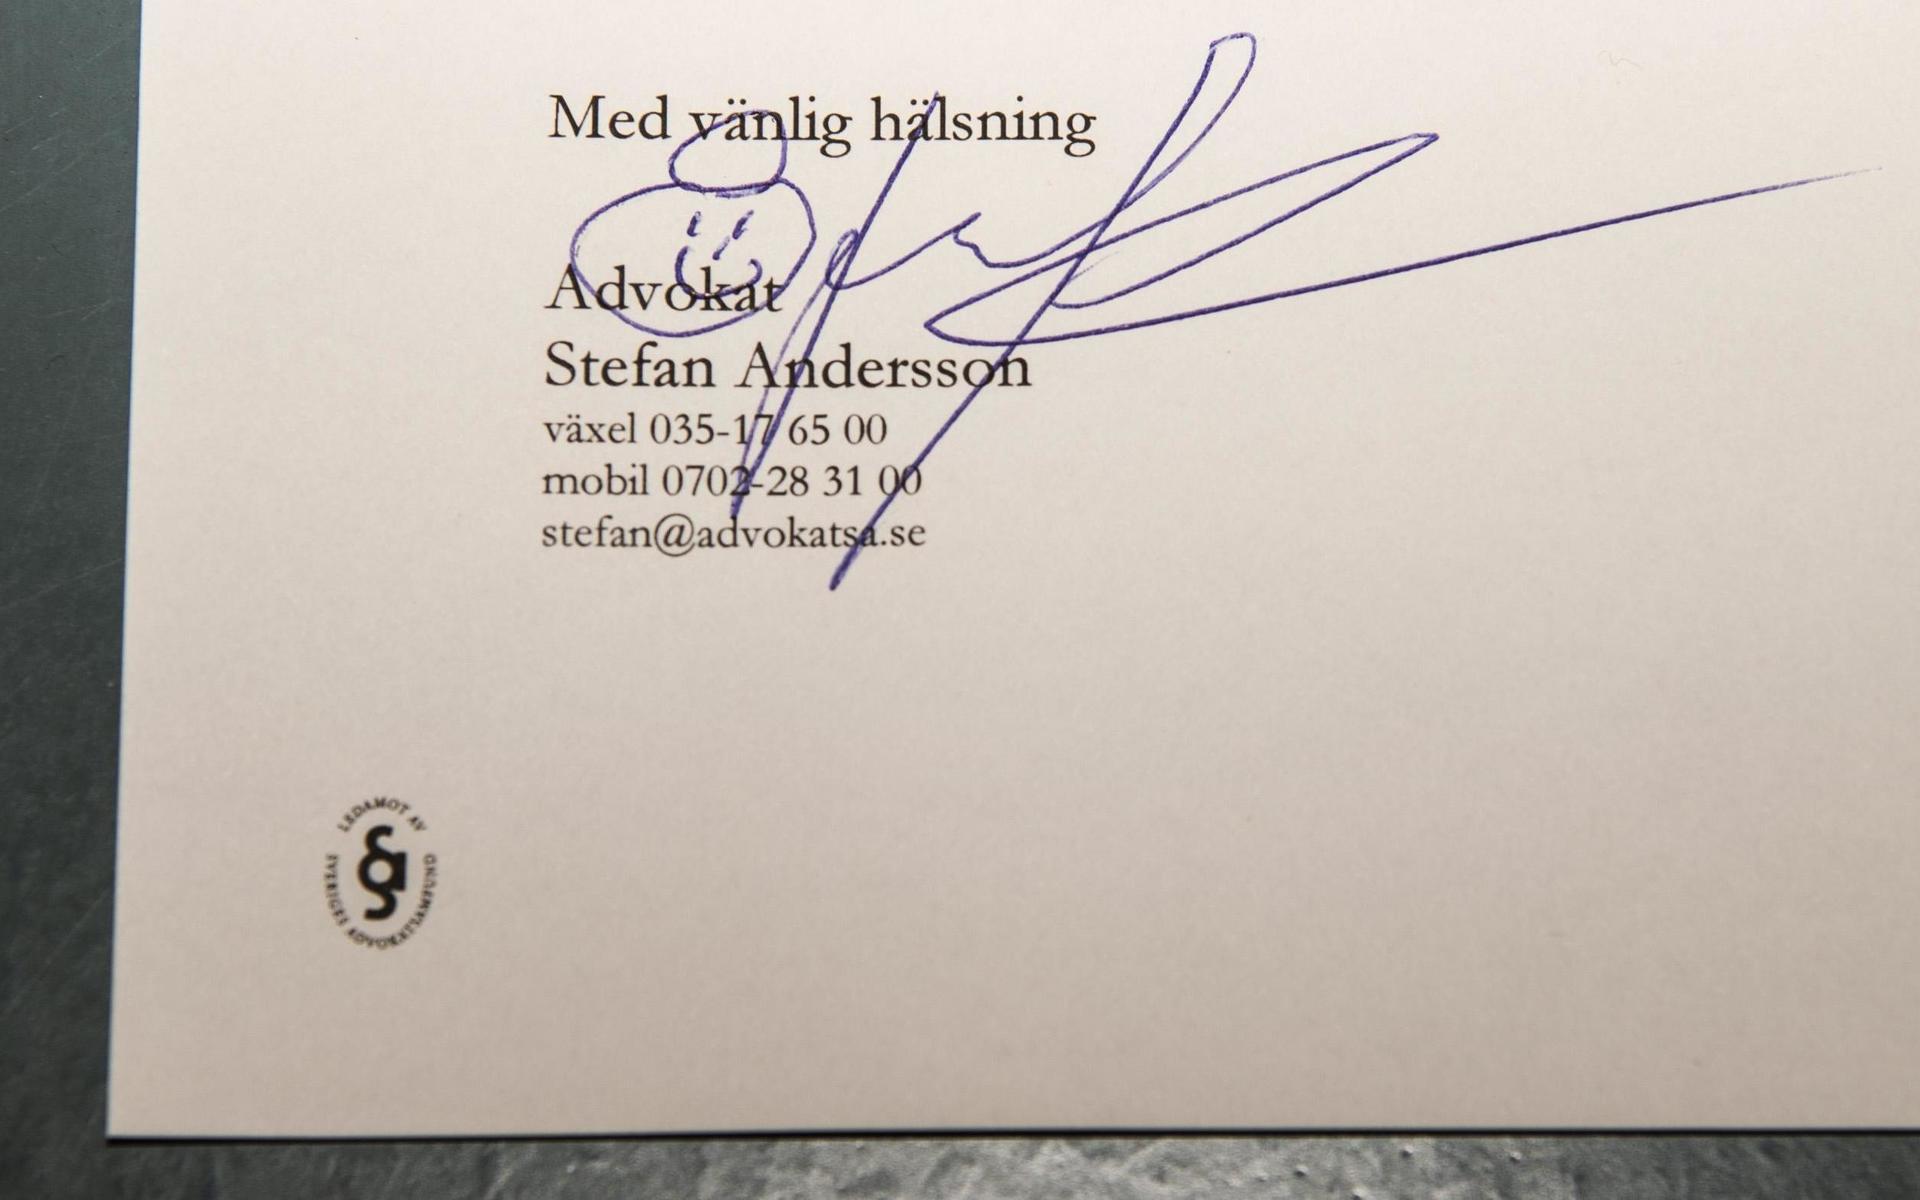 Stefan Anderssons namnteckning sprider glädje och förmedlar hur han ser på sig själv och livet.